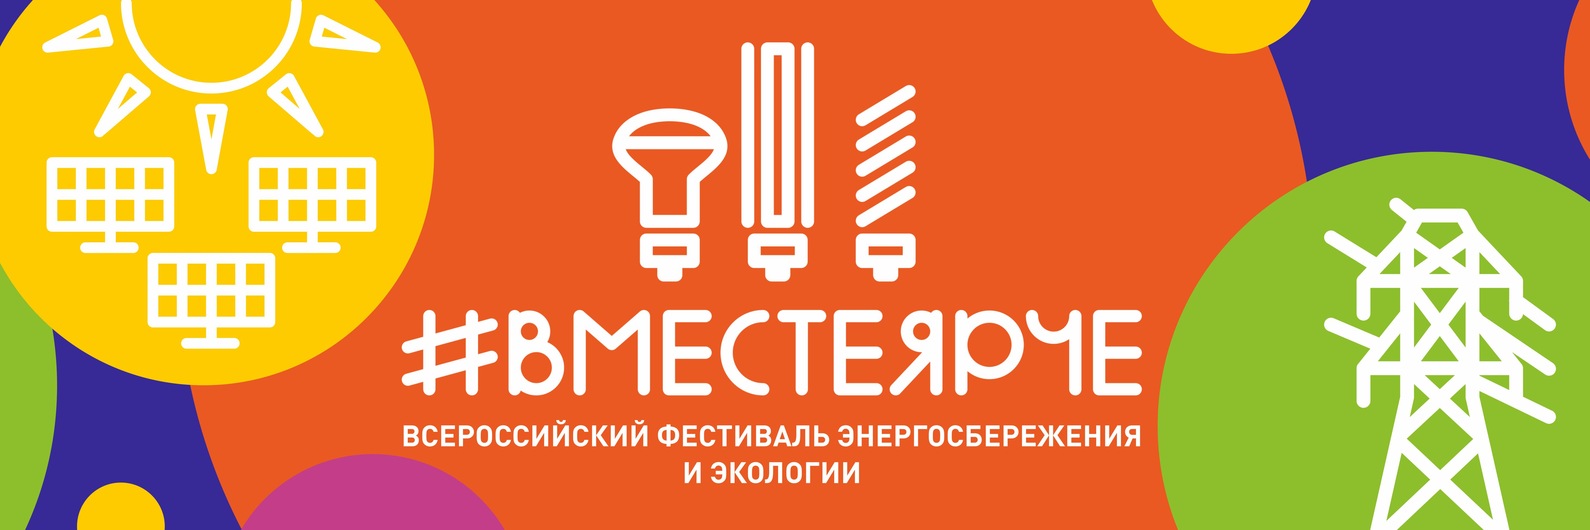 Всероссийский Фестиваль энергосбережения #ВместеЯрче.